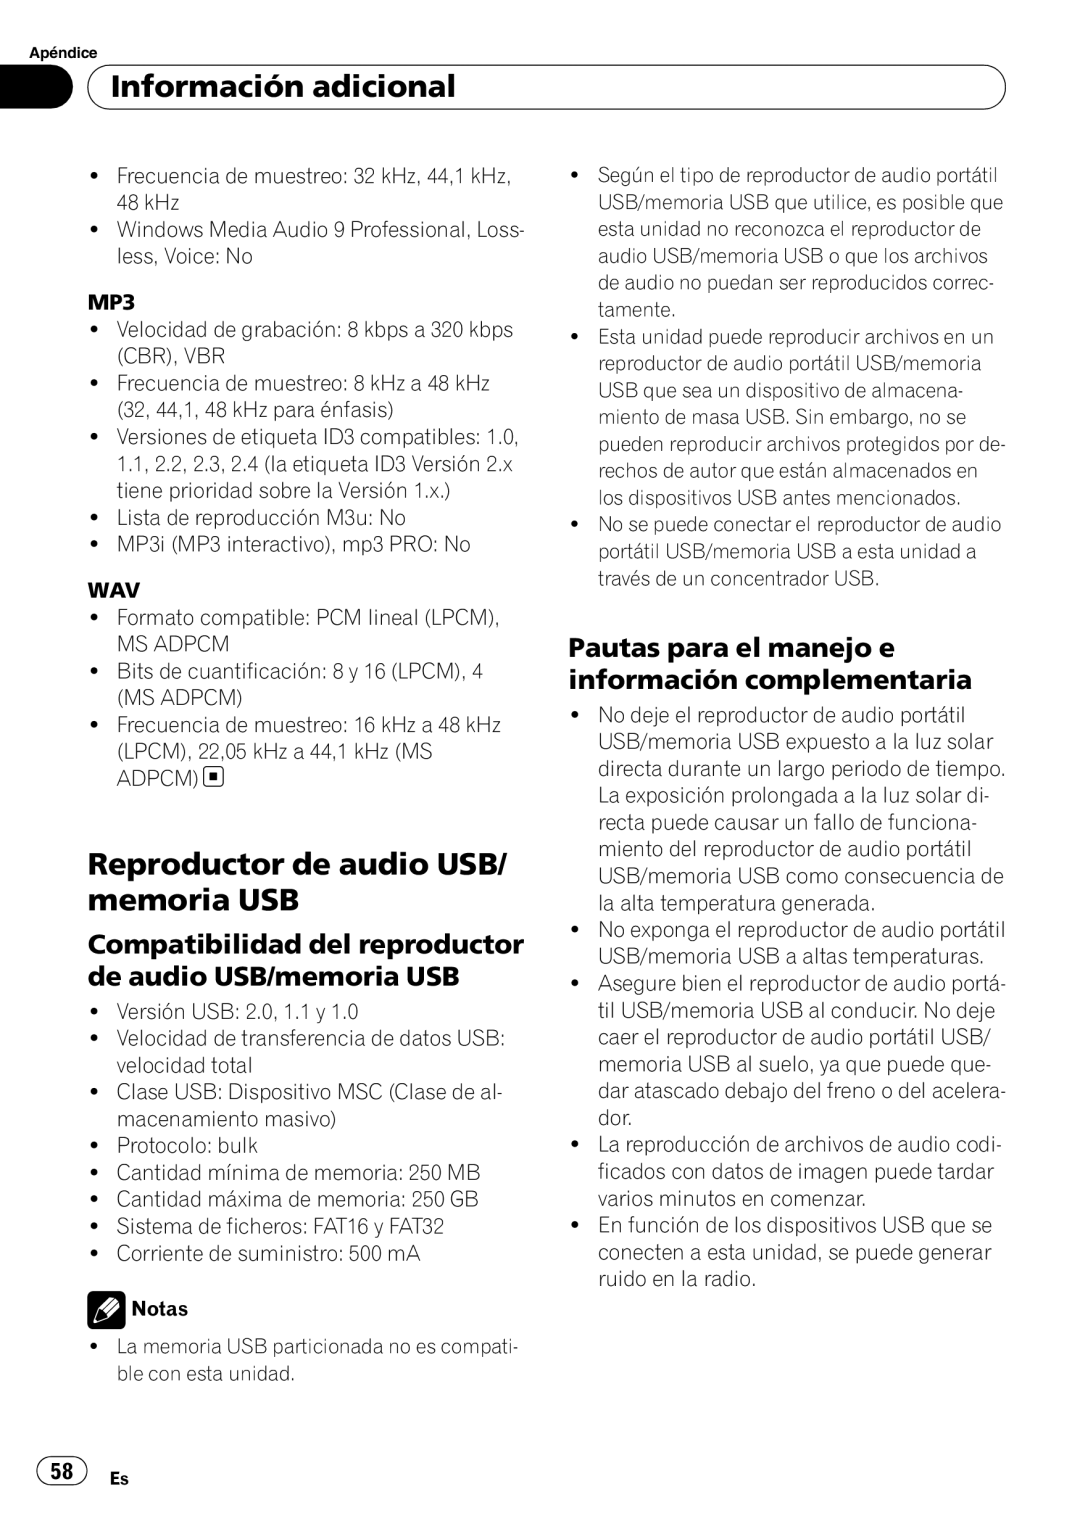 Pioneer DEH-3050UB operation manual Reproductor de audio USB/ memoria USB, Información adicional 